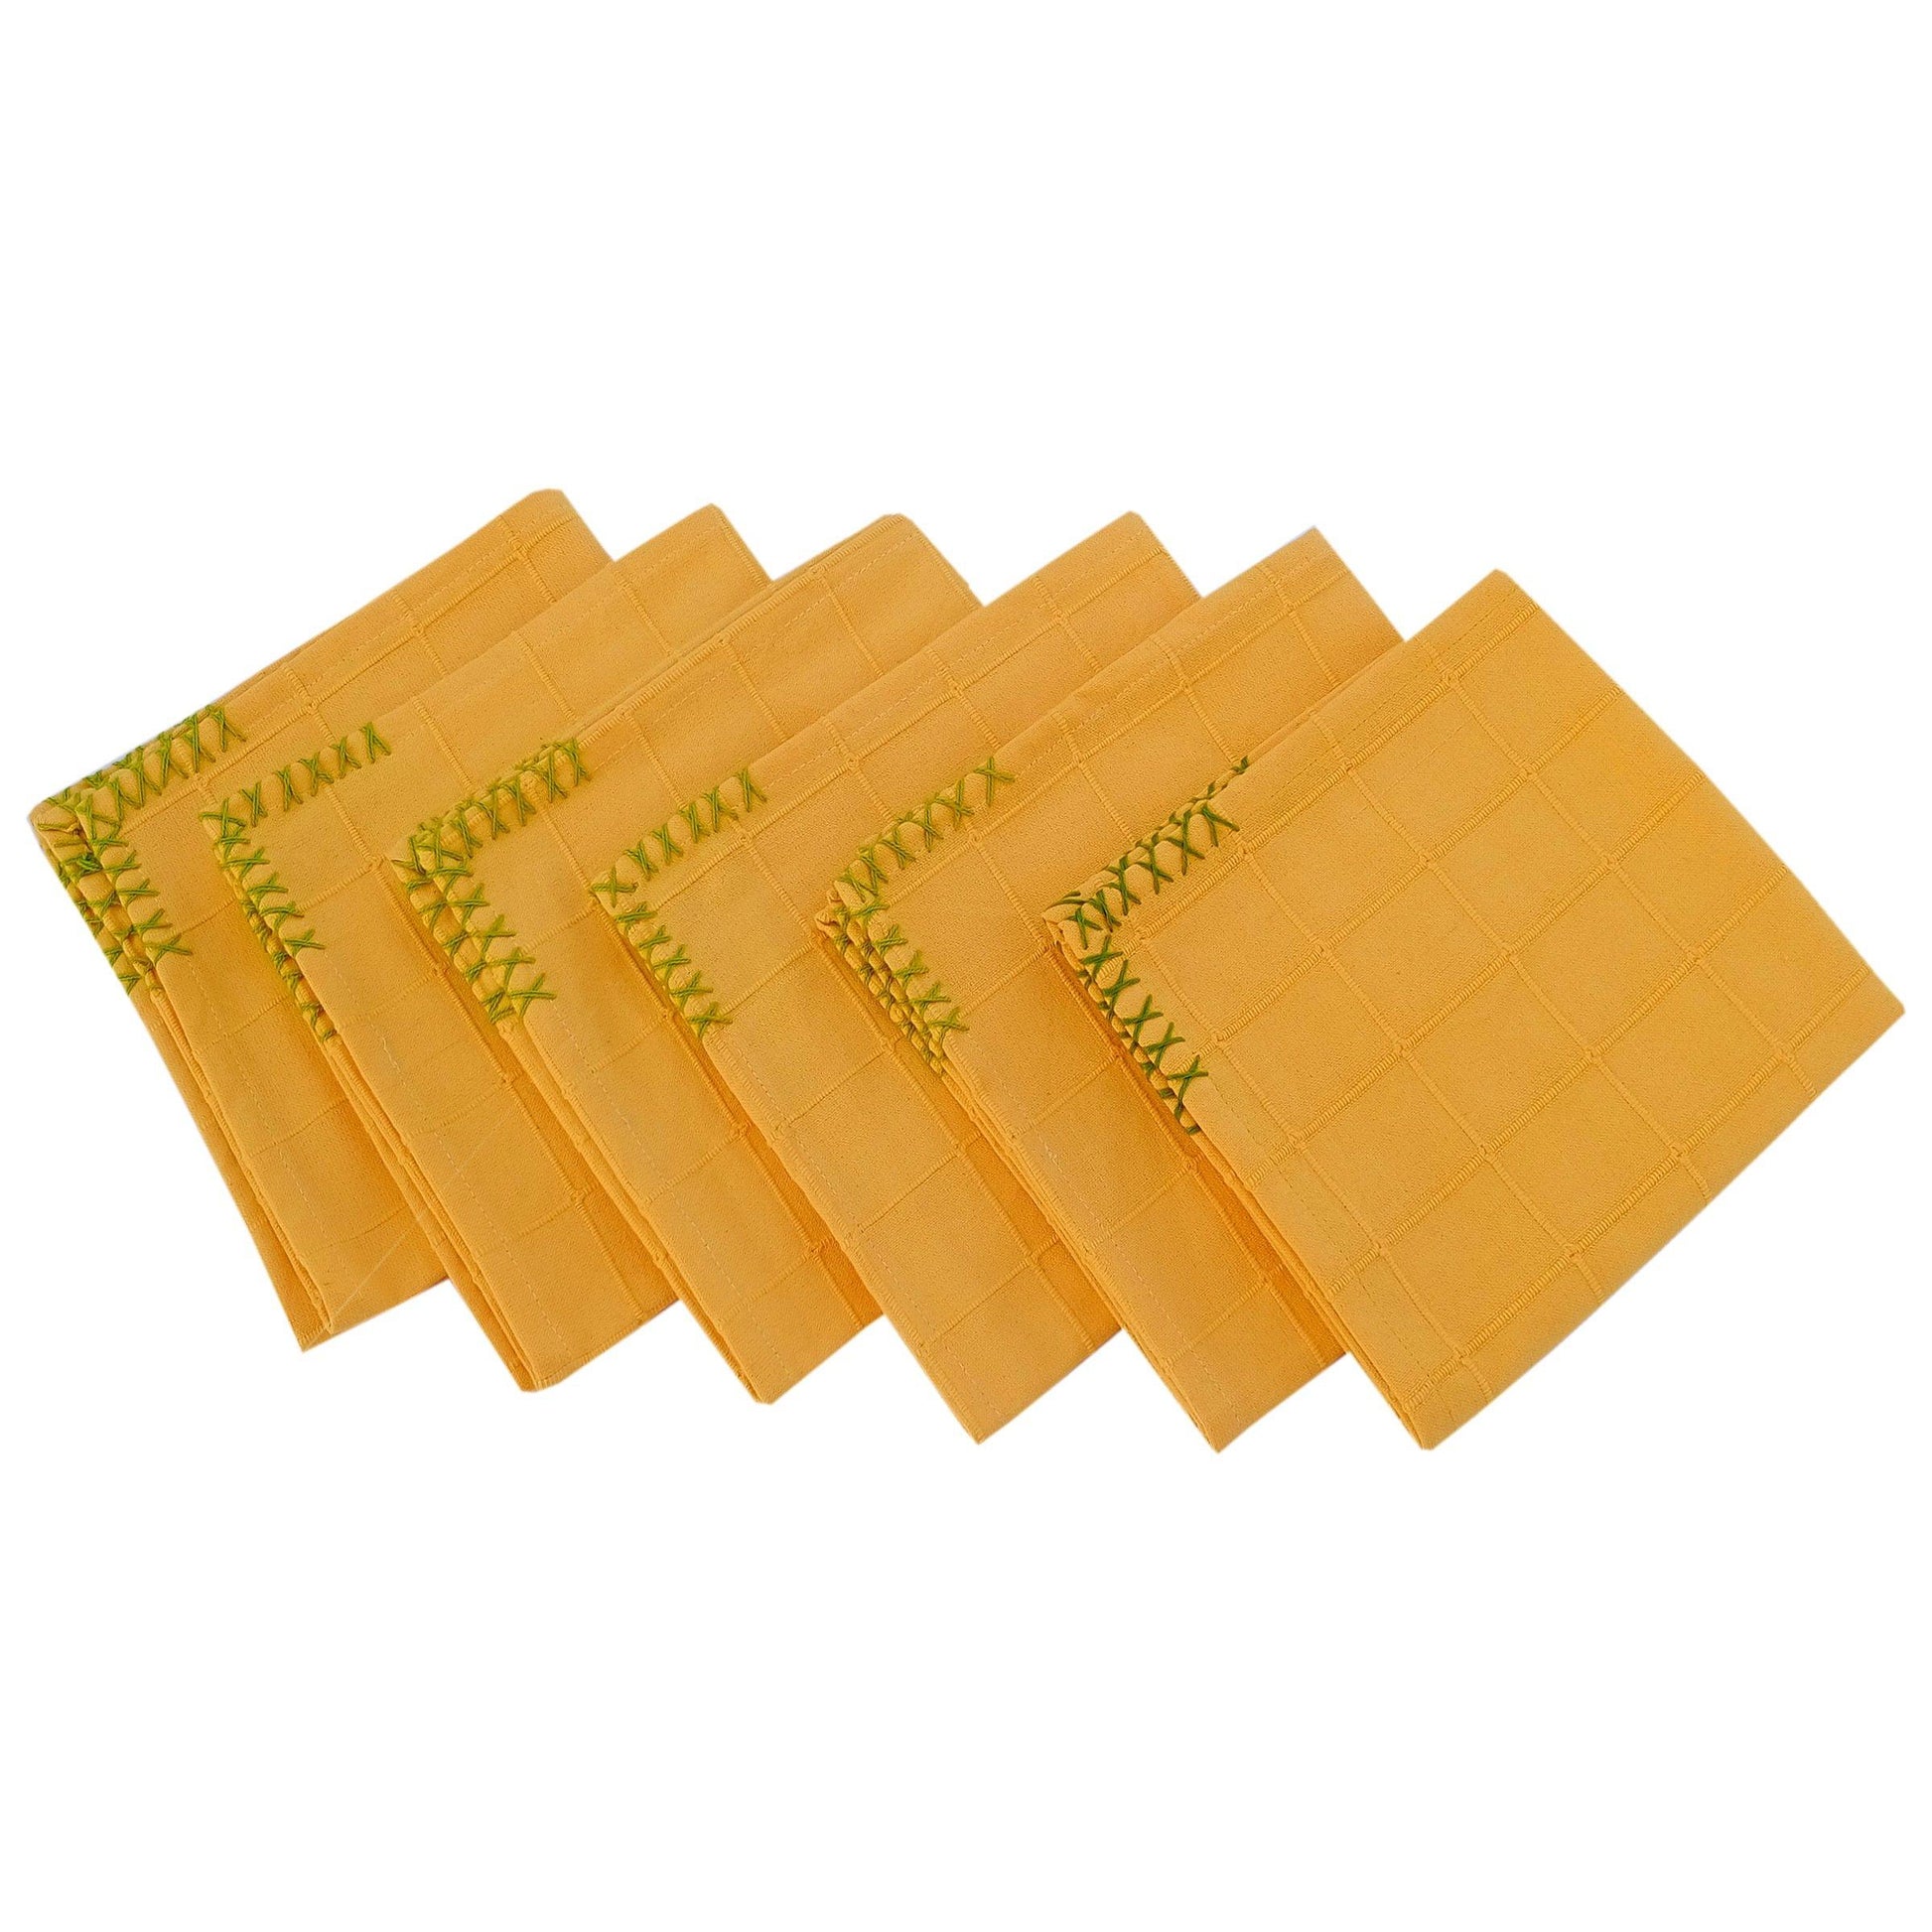 Napkin Set of 6 - Yellow Checks - The Teal Thread